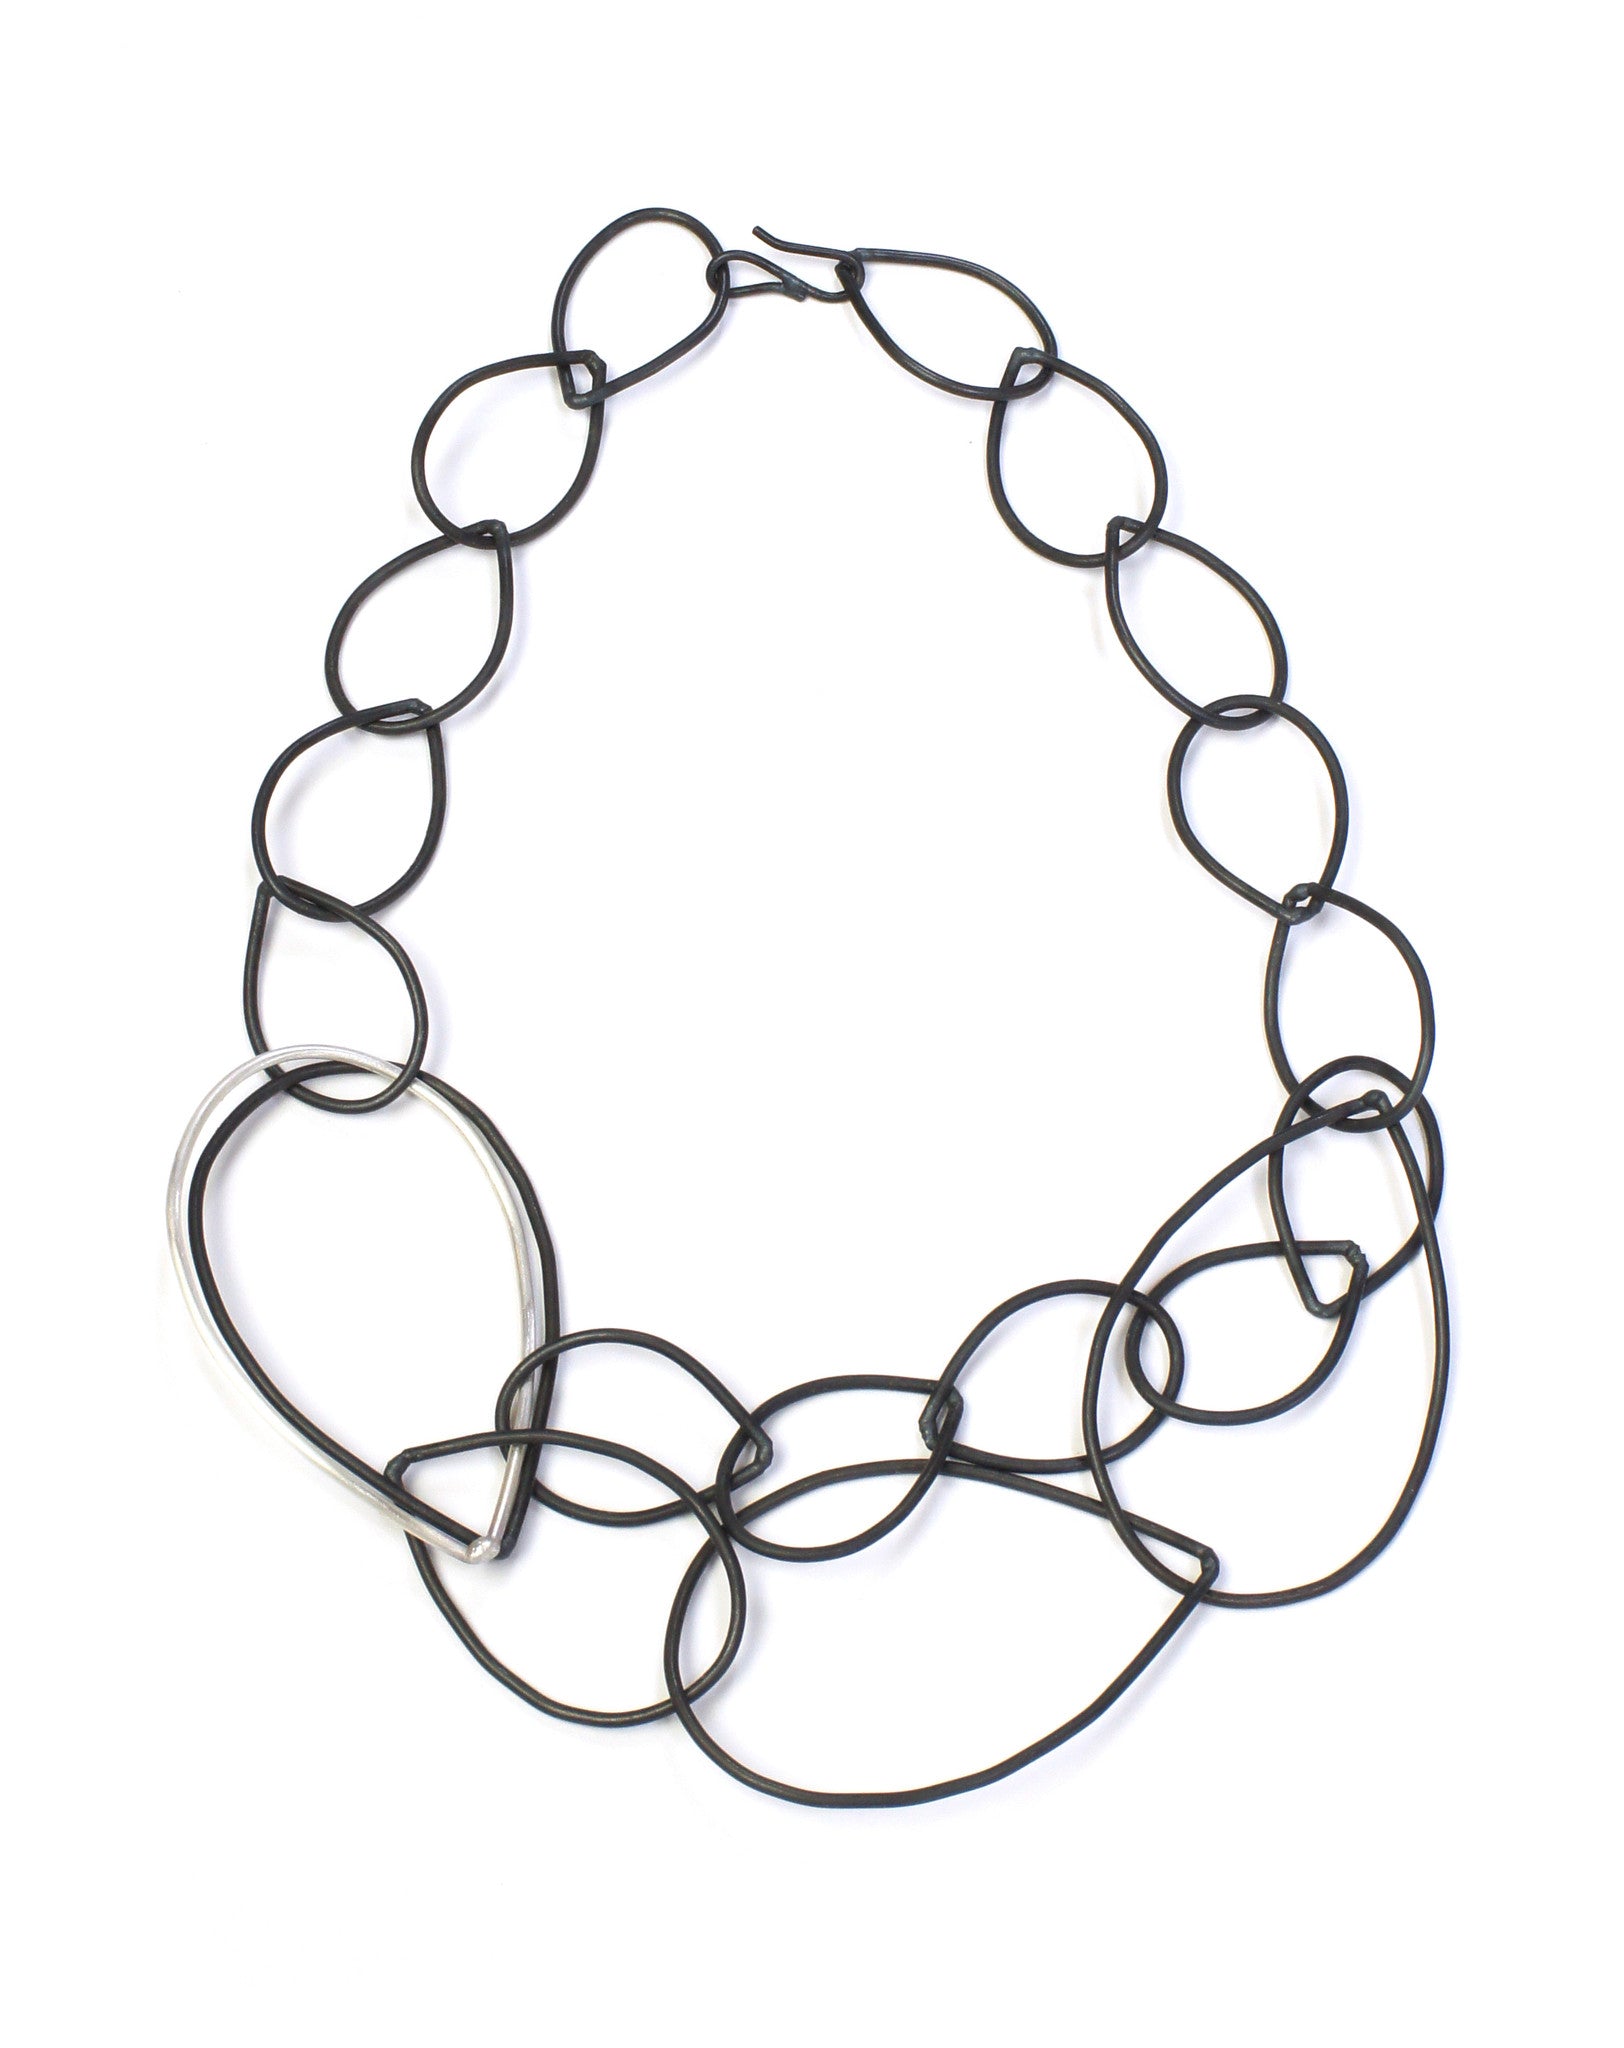 Daphne necklace